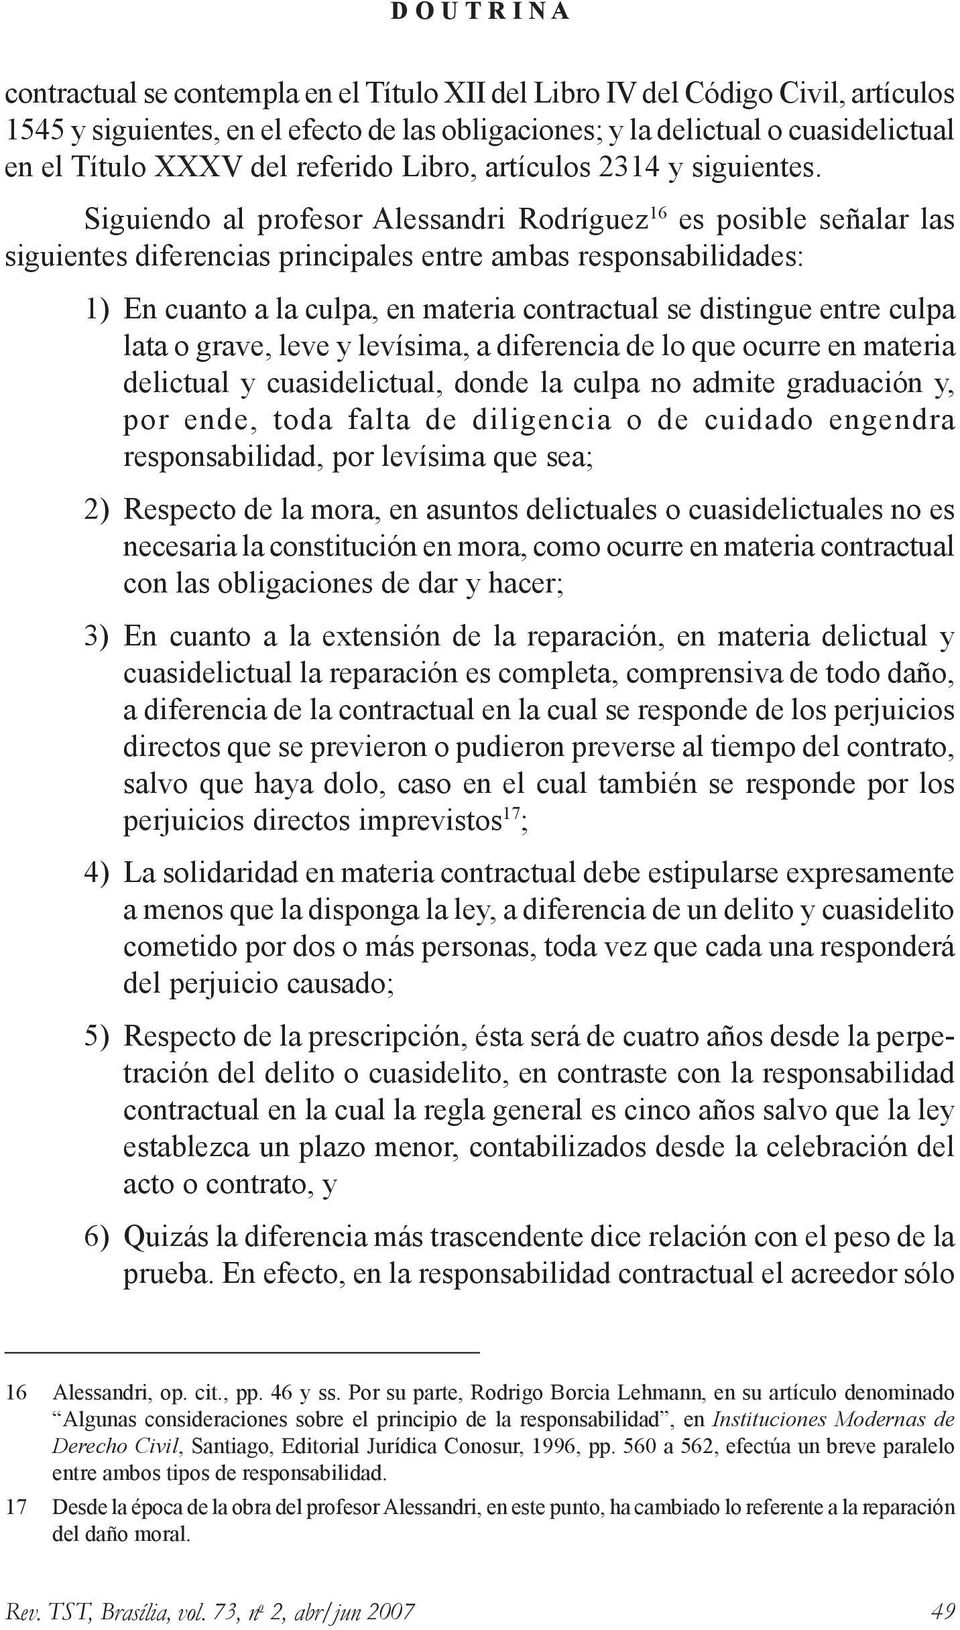 Siguiendo al profesor Alessandri Rodríguez 16 es posible señalar las siguientes diferencias principales entre ambas responsabilidades: 1) En cuanto a la culpa, en materia contractual se distingue